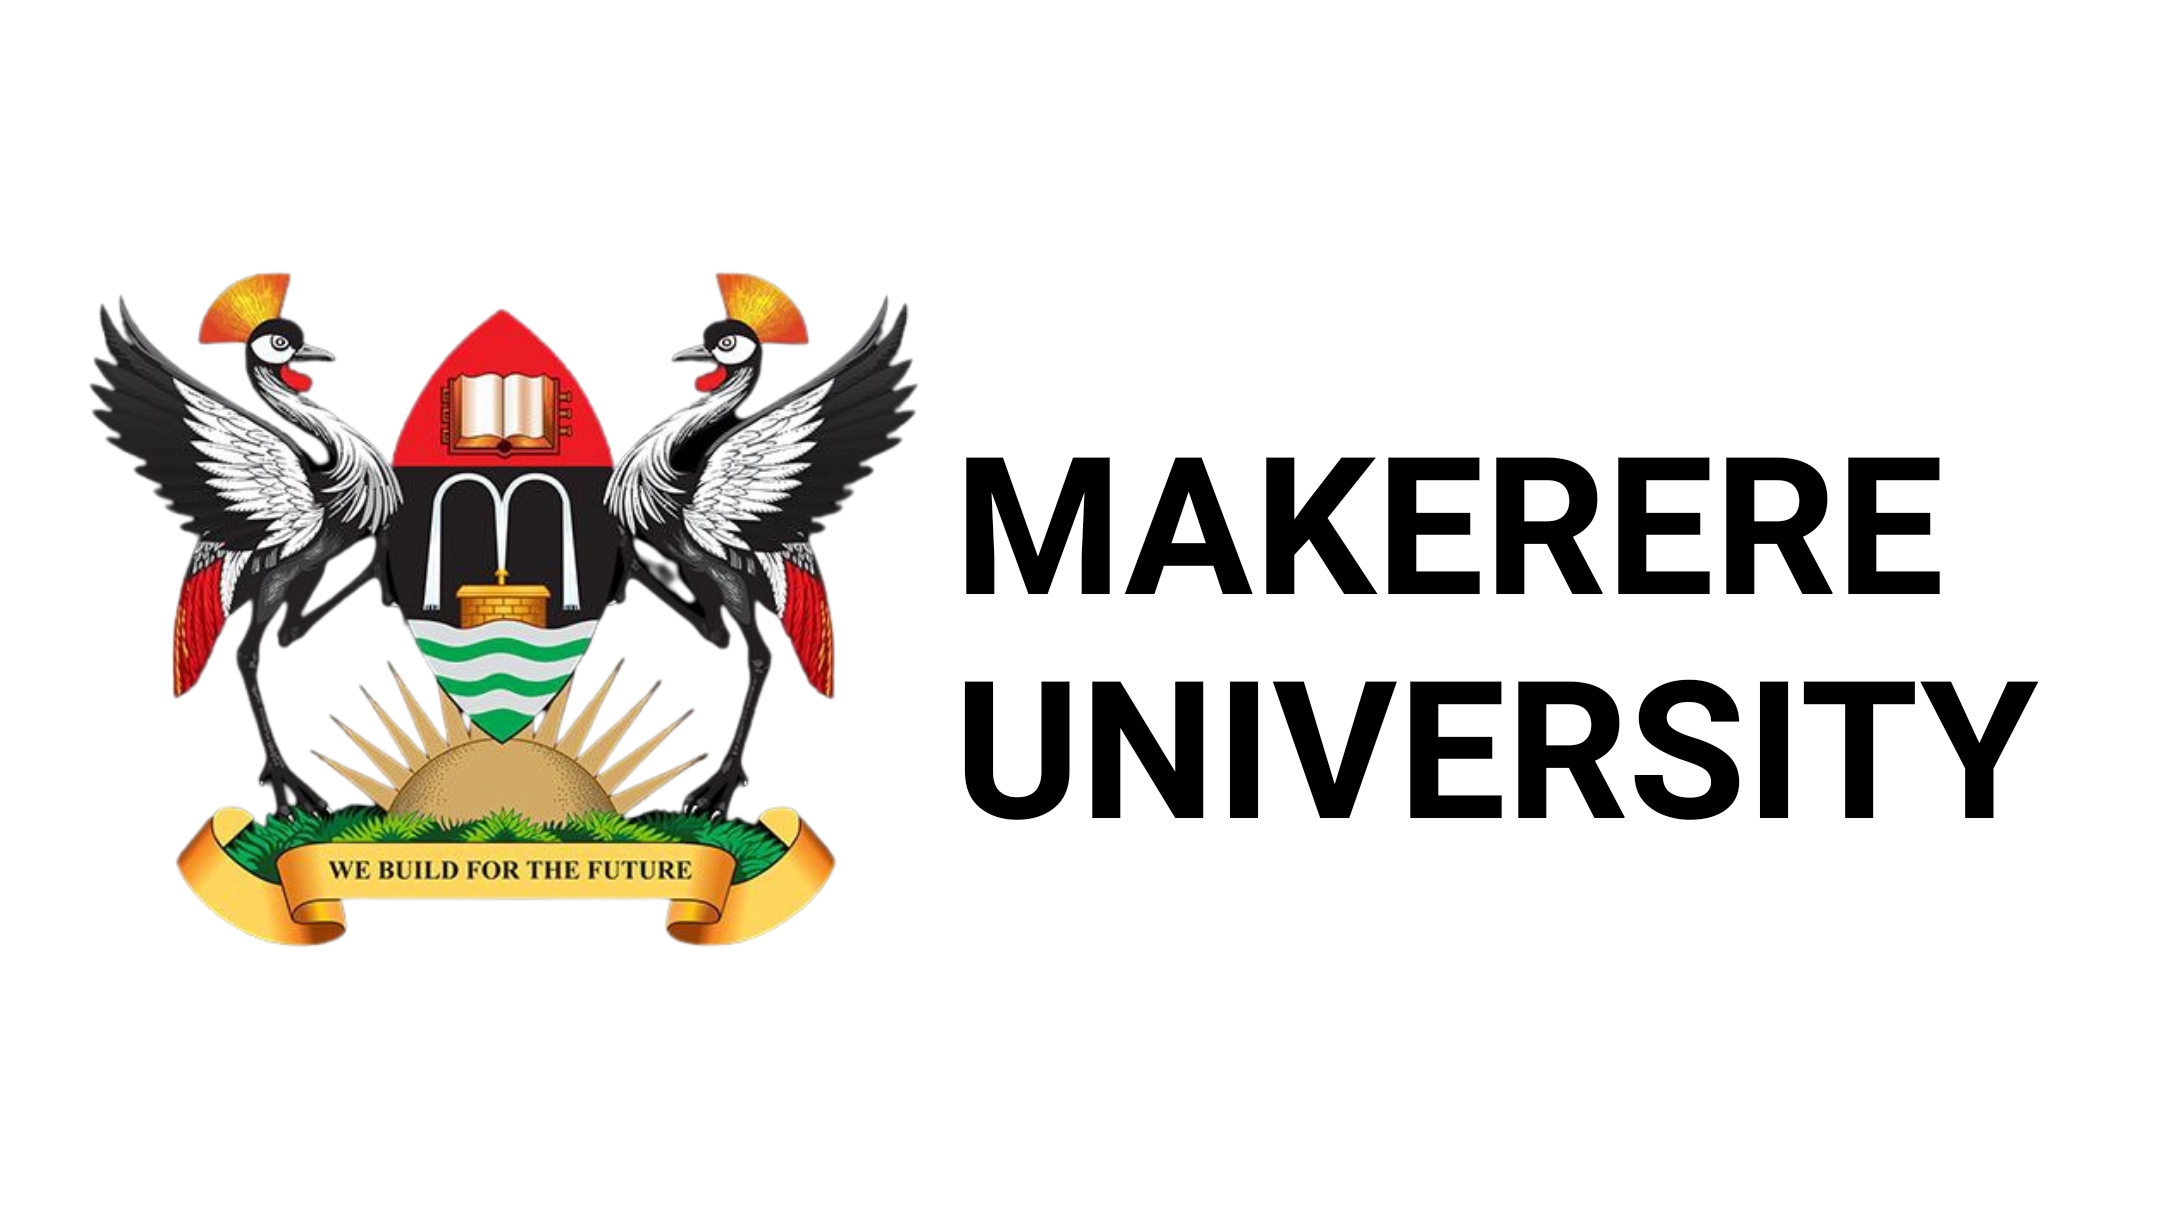 Makerere University Image